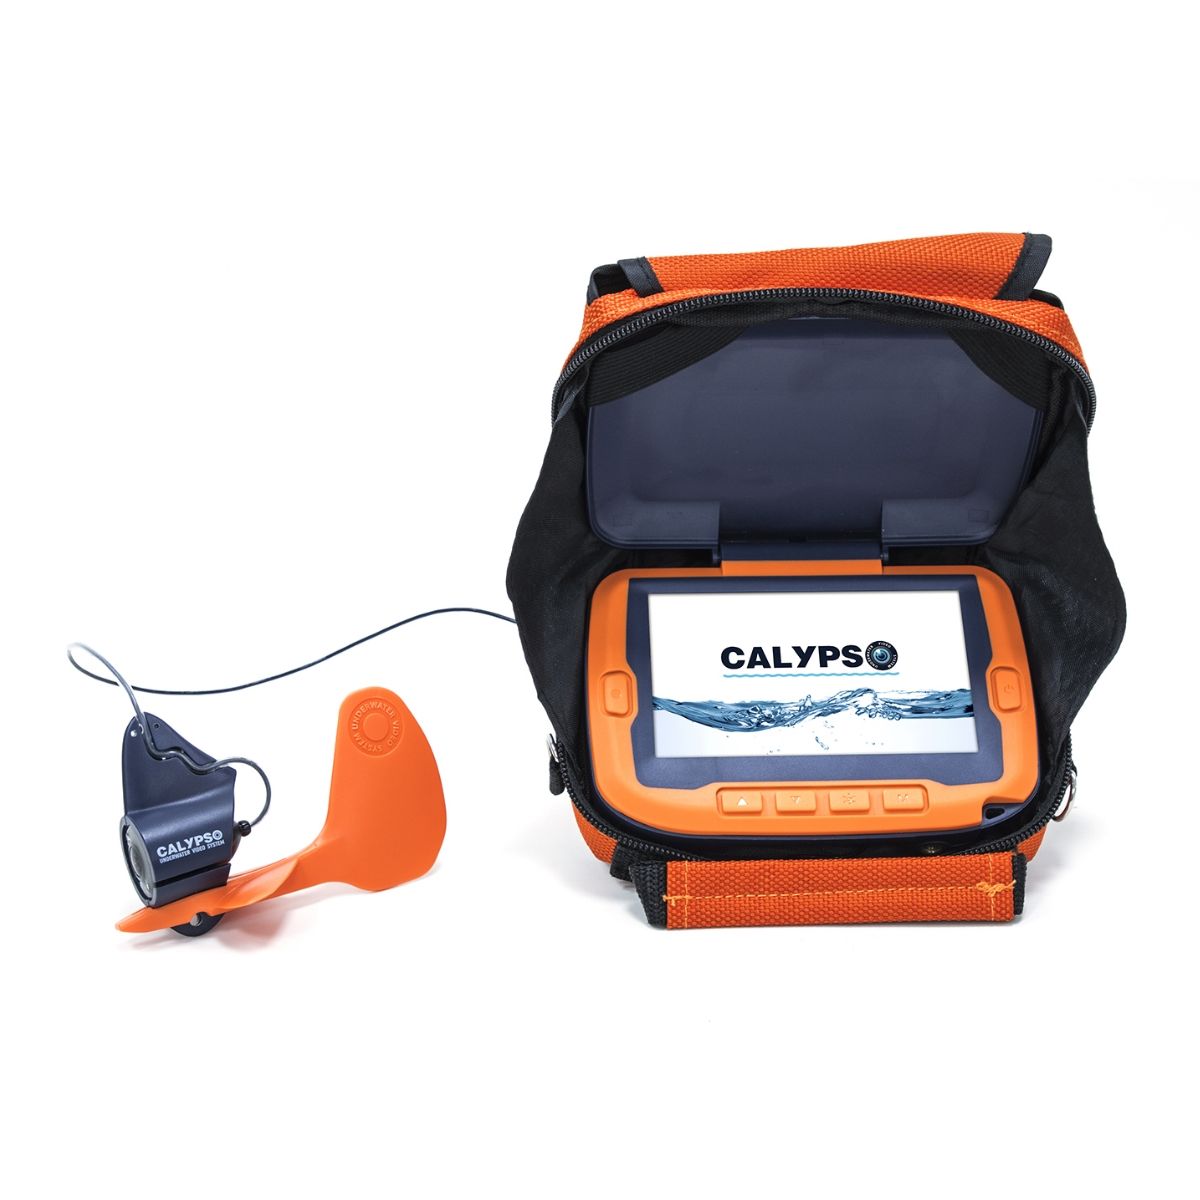 Calypso камера для рыбалки - характеристики, отзывы, цена